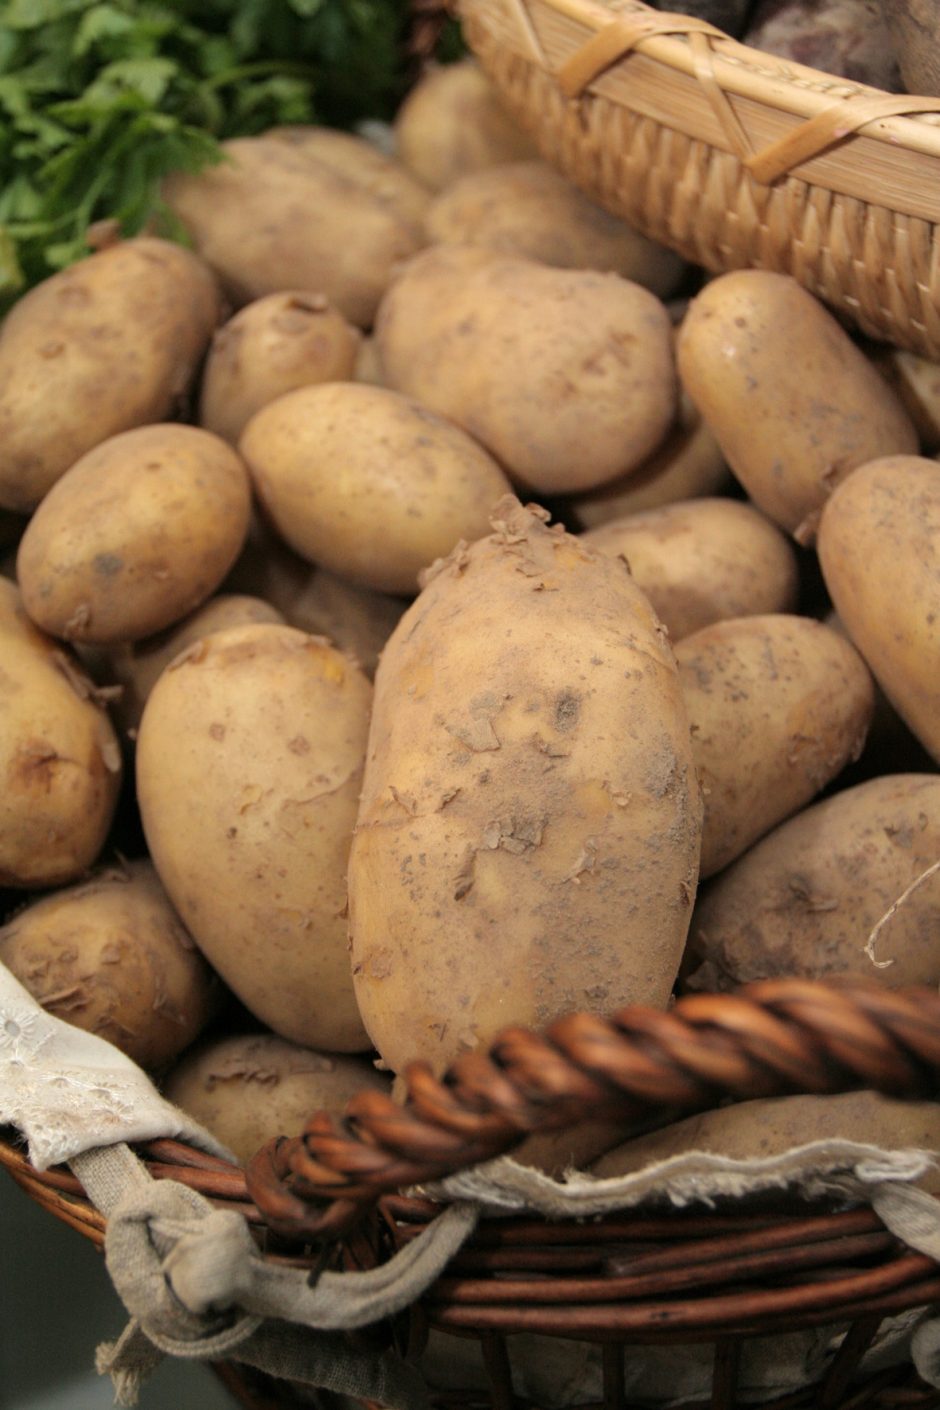 Gegužę šviežiam vartojimui supirkta mažiau bulvių ir daržovių